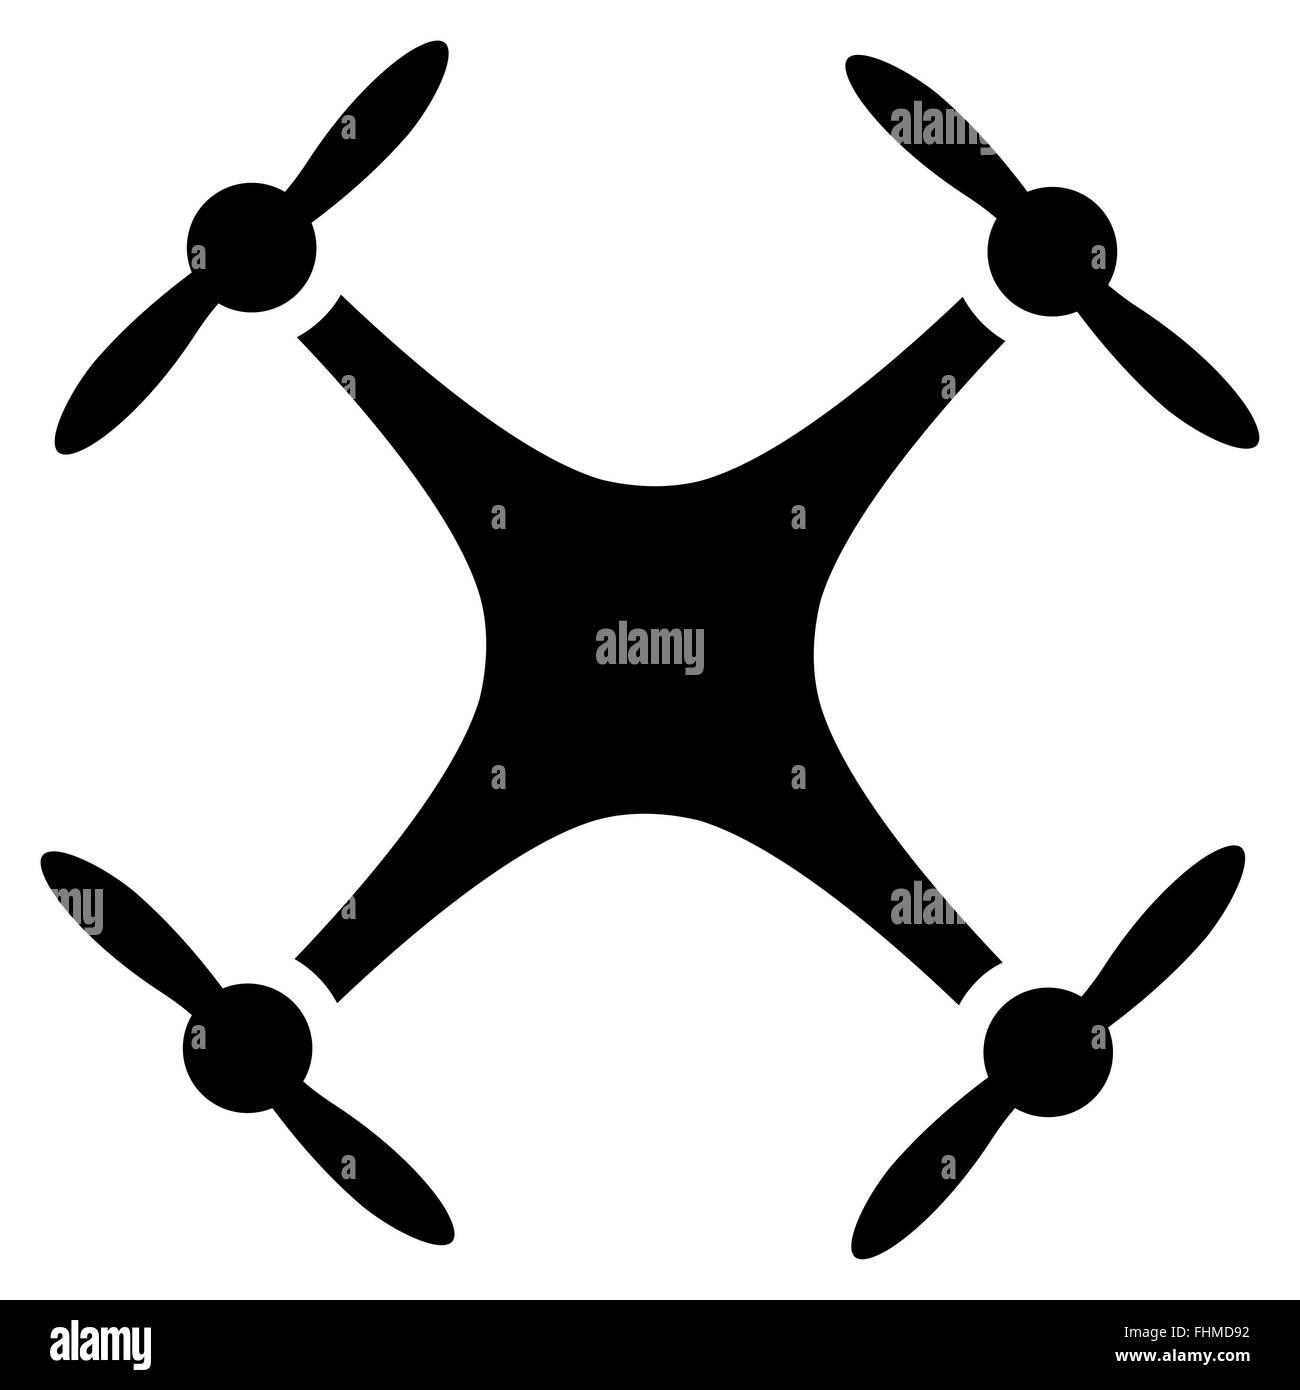 Quadcopter icon Stock Photo